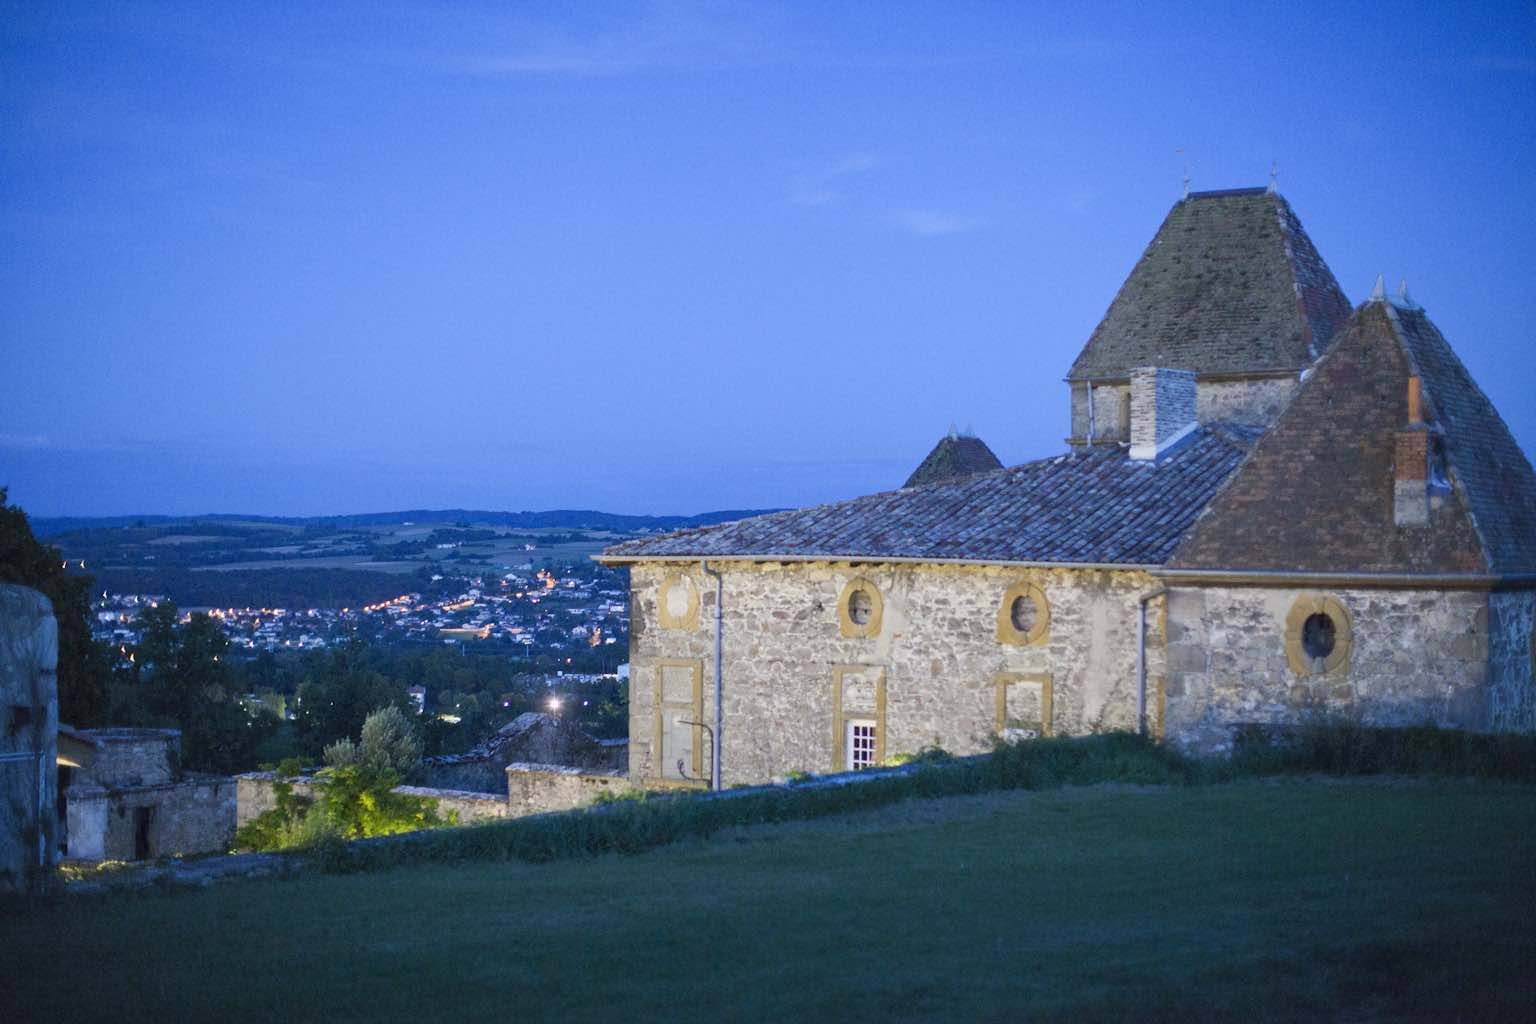 Château La Gallée